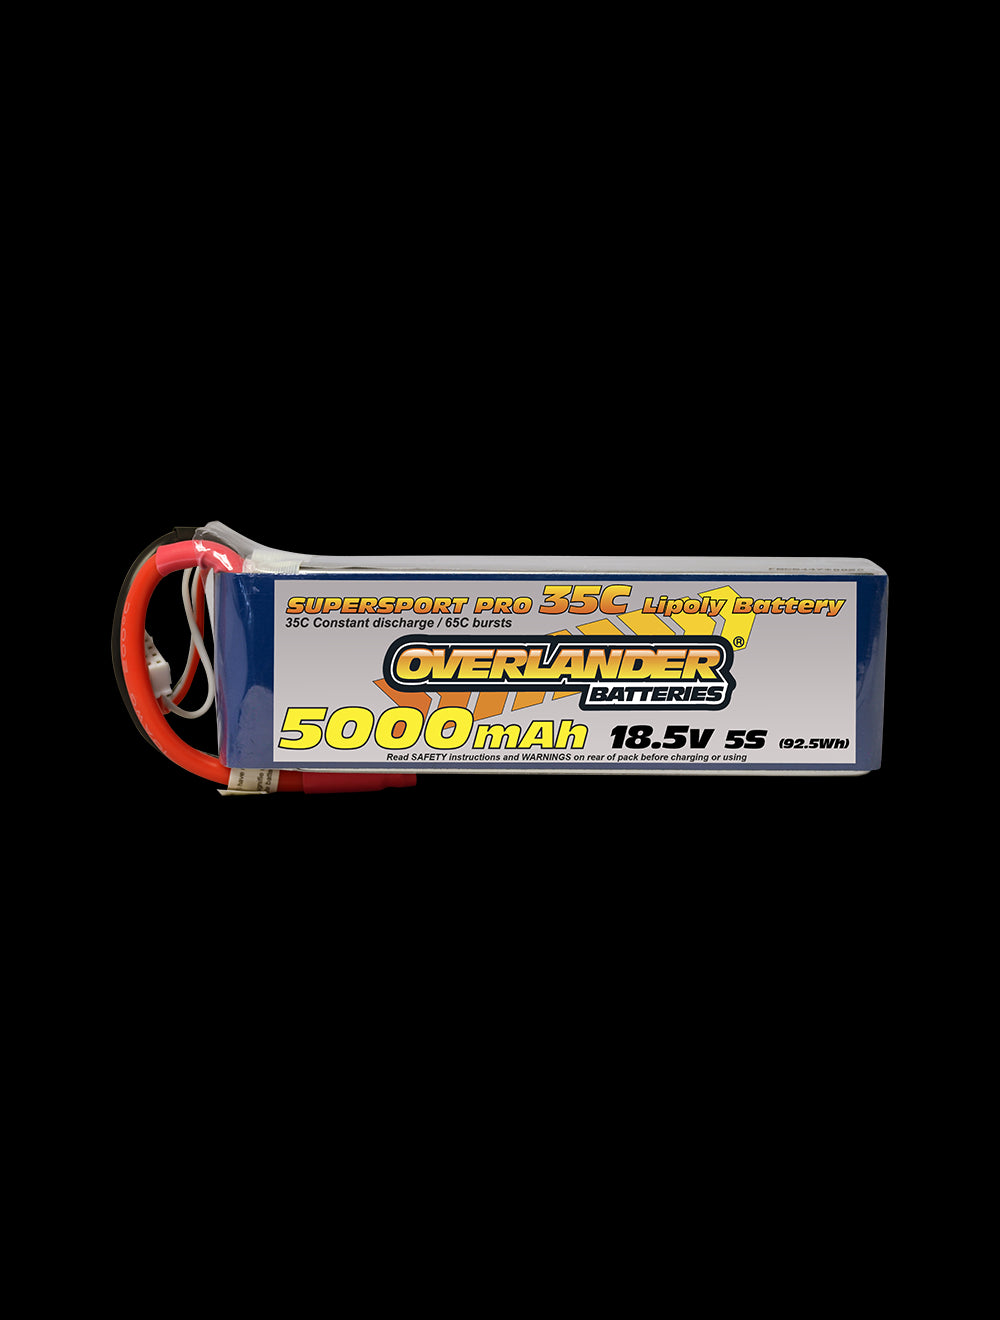 Overlander 5000mAh 18.5V 5S 35C Supersport Pro LiPo Battery - EC5 Connector 2579